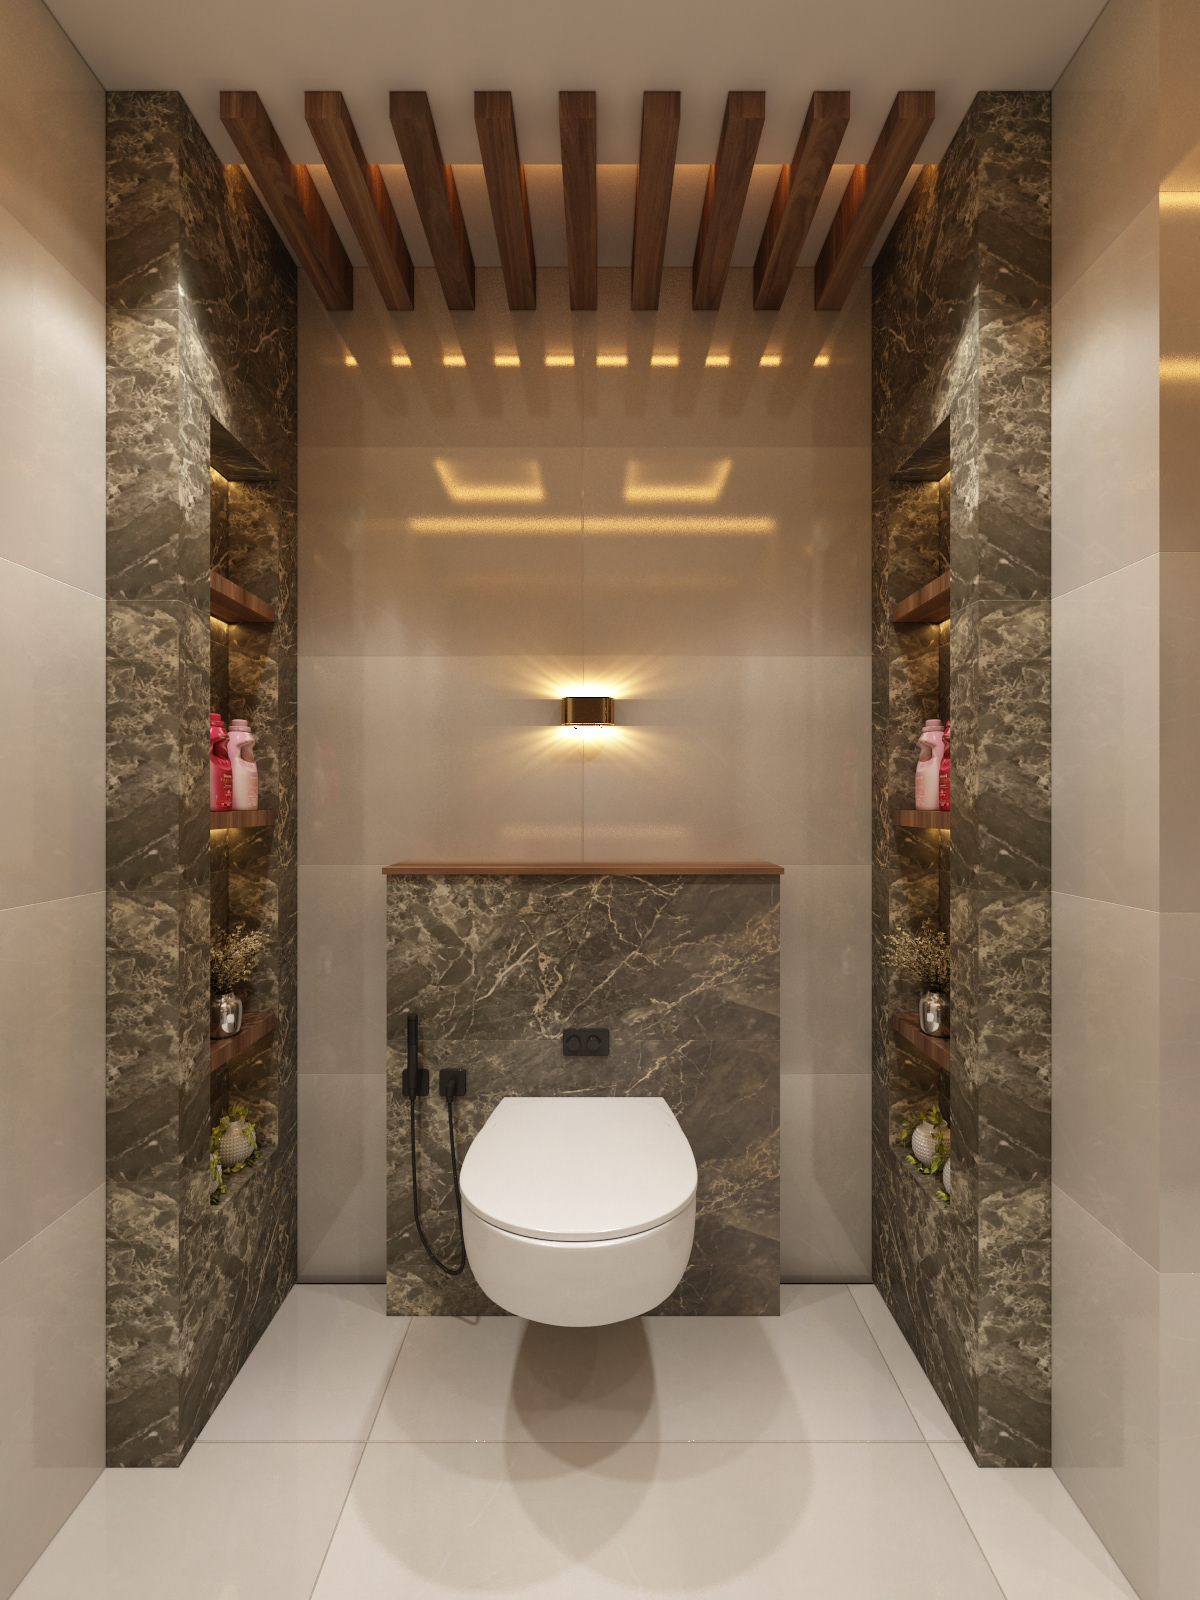 bathroom architecture interior design  vanity wardrobes mirror reflection modernbathroomdesign